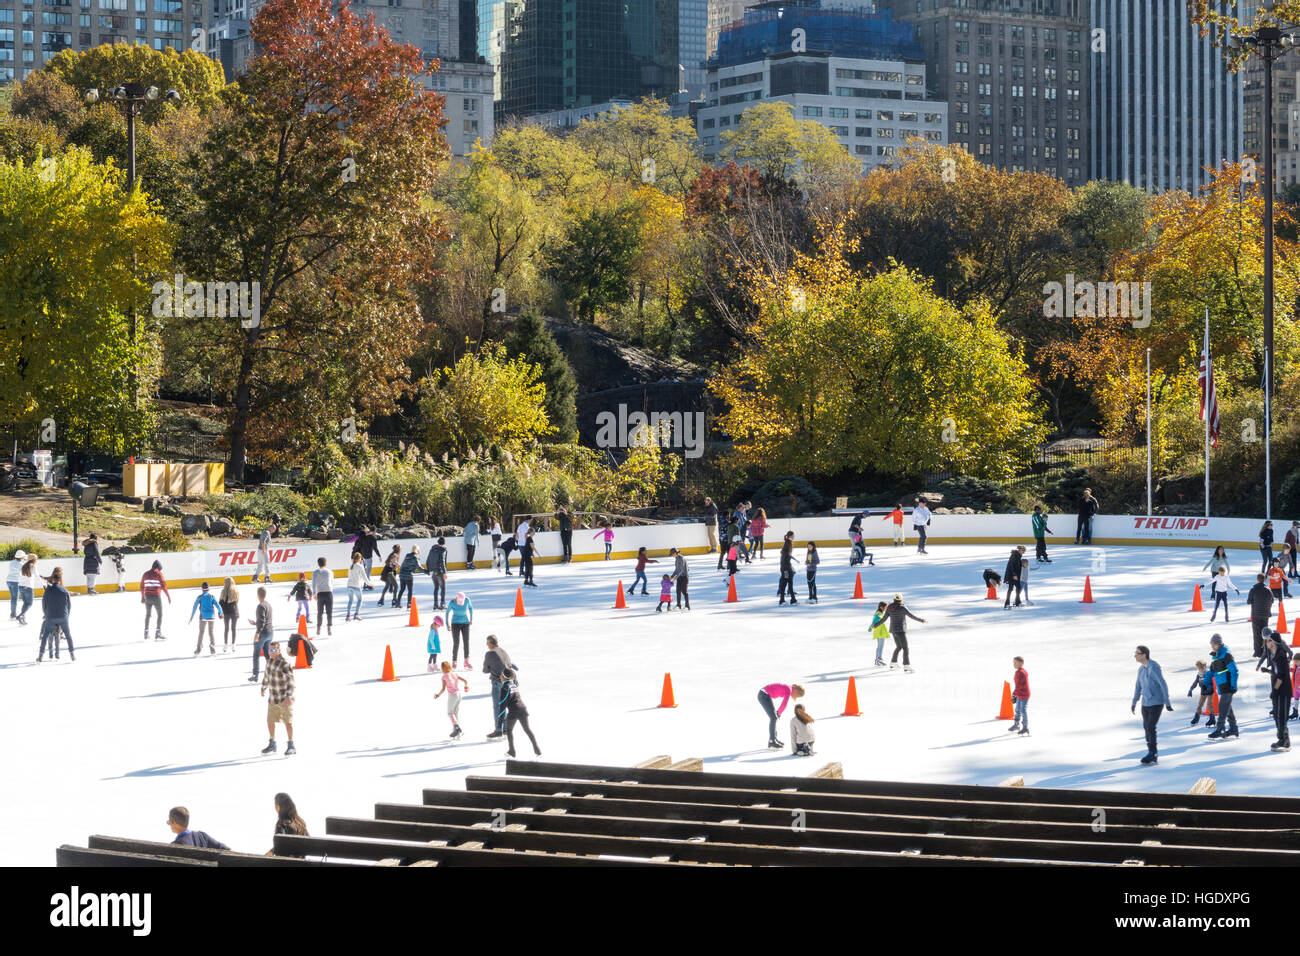 La patinoire Wollman Rink de Central Park, NYC, USA Banque D'Images